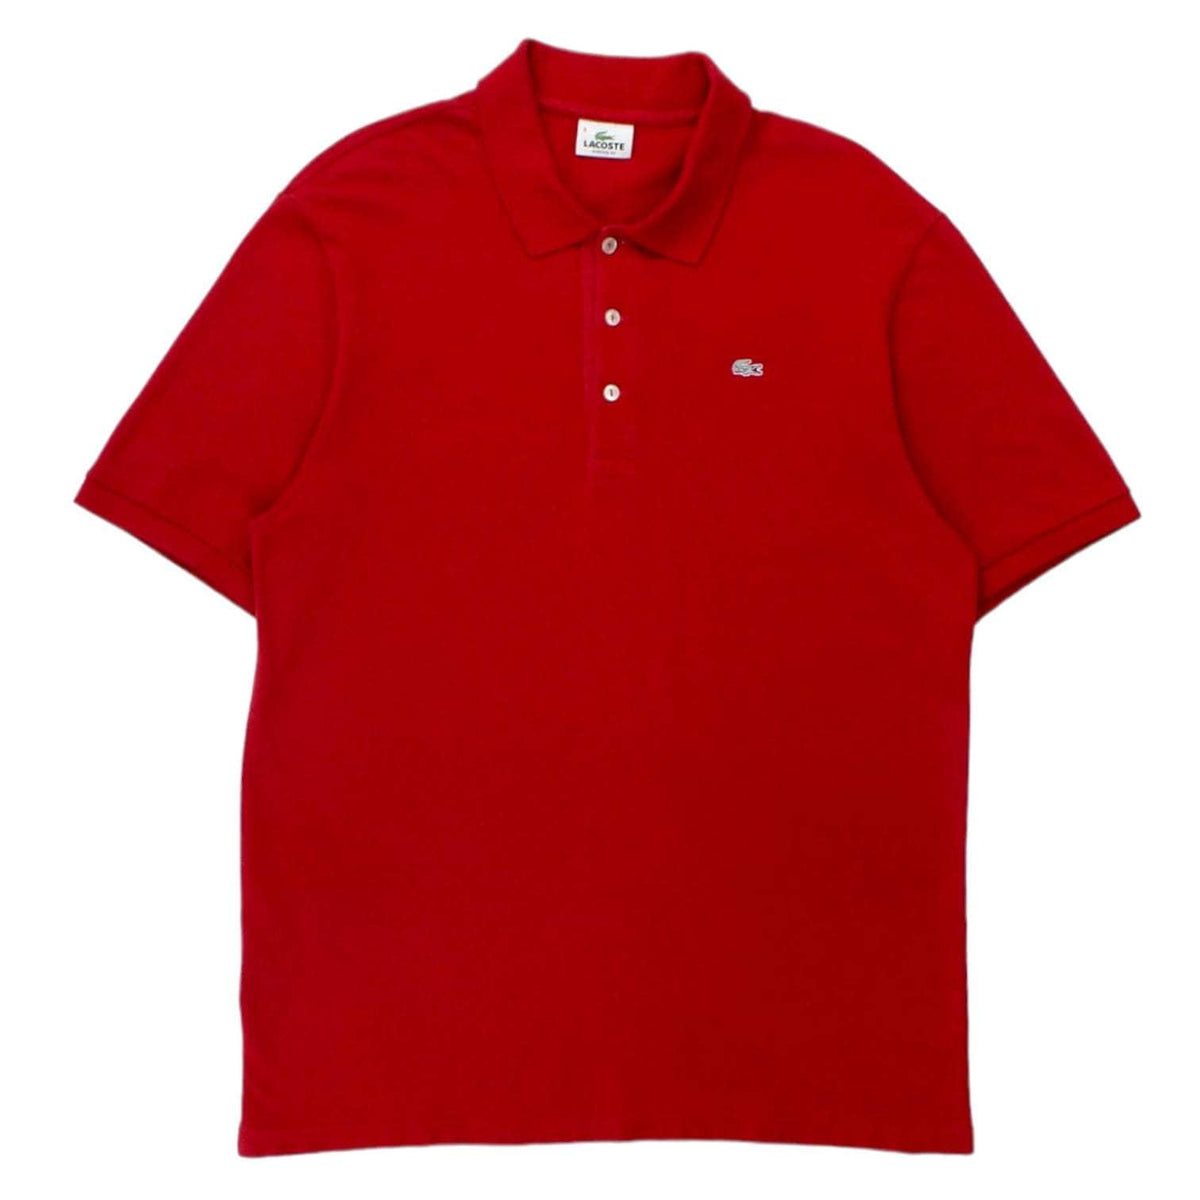 Lacoste Red Pique Cotton Polo Shirt